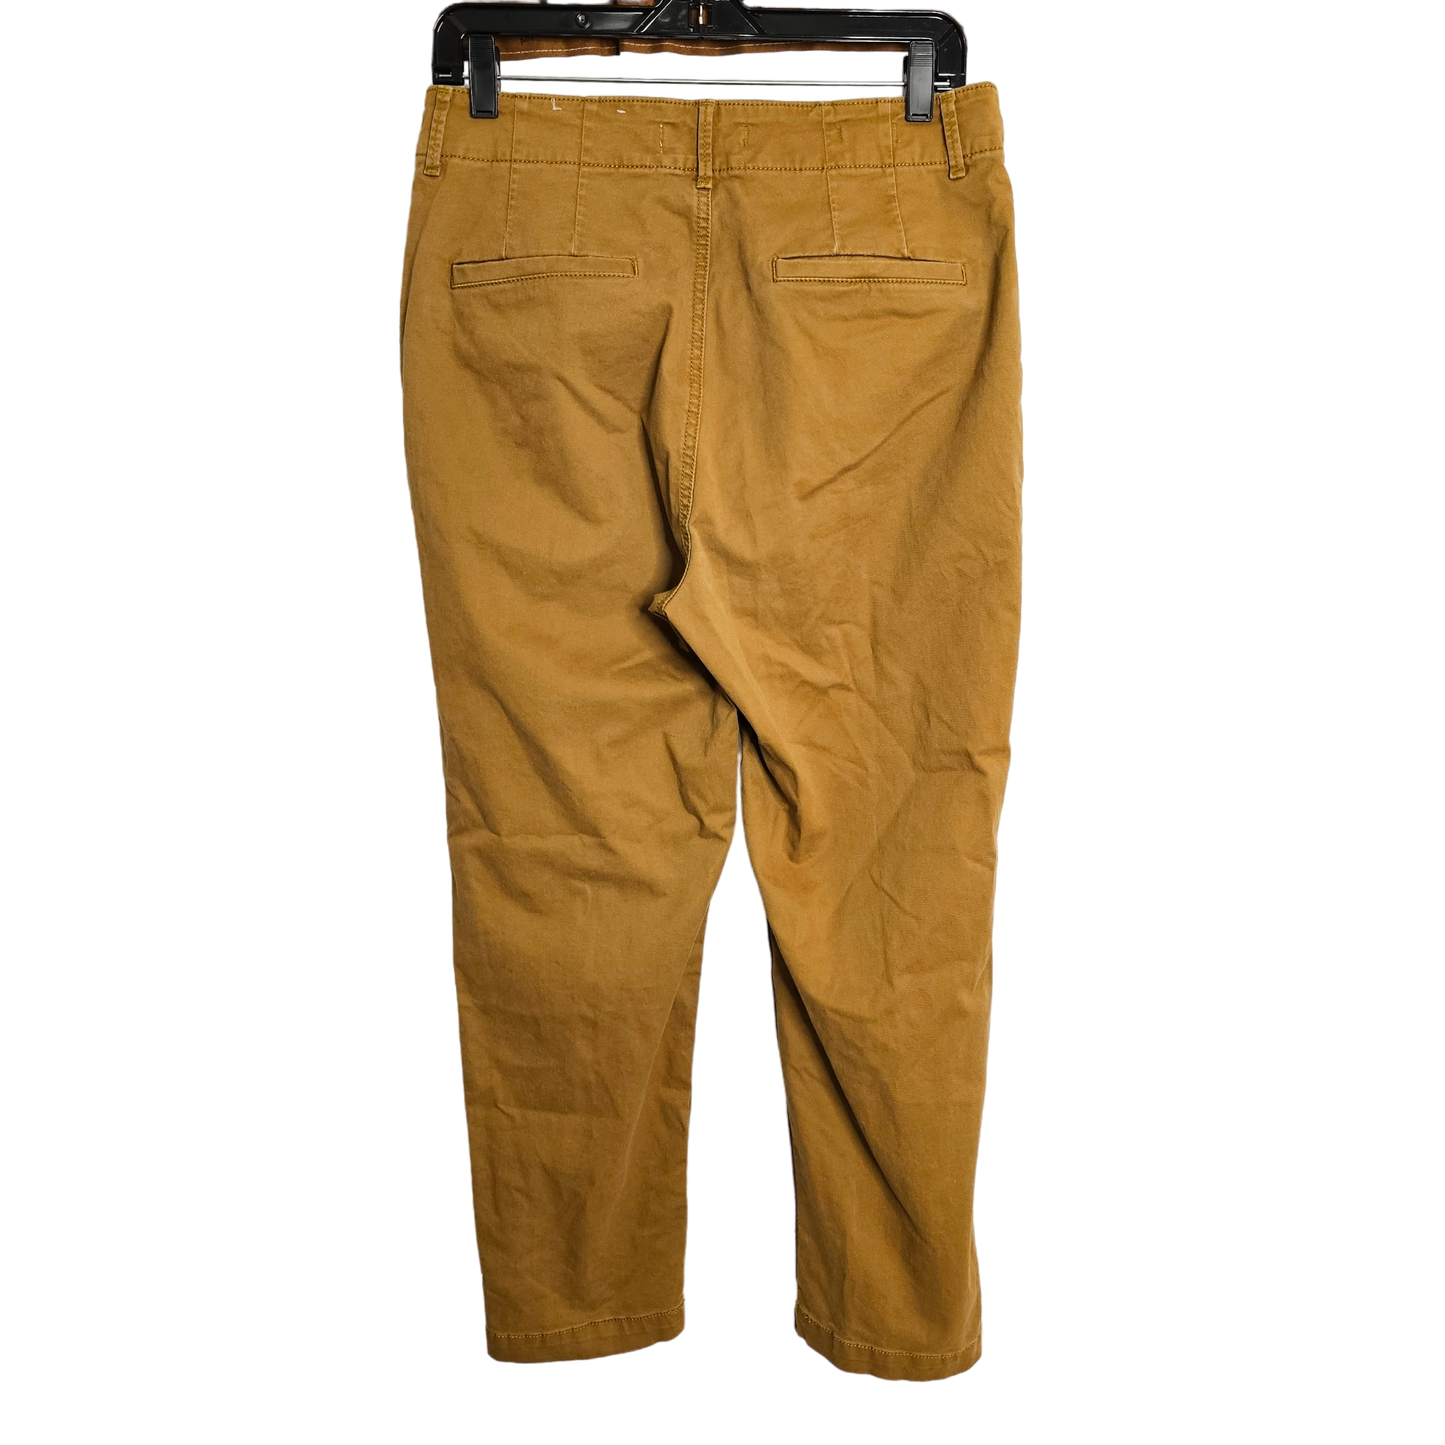 Pants Chinos & Khakis By Loft  Size: 8